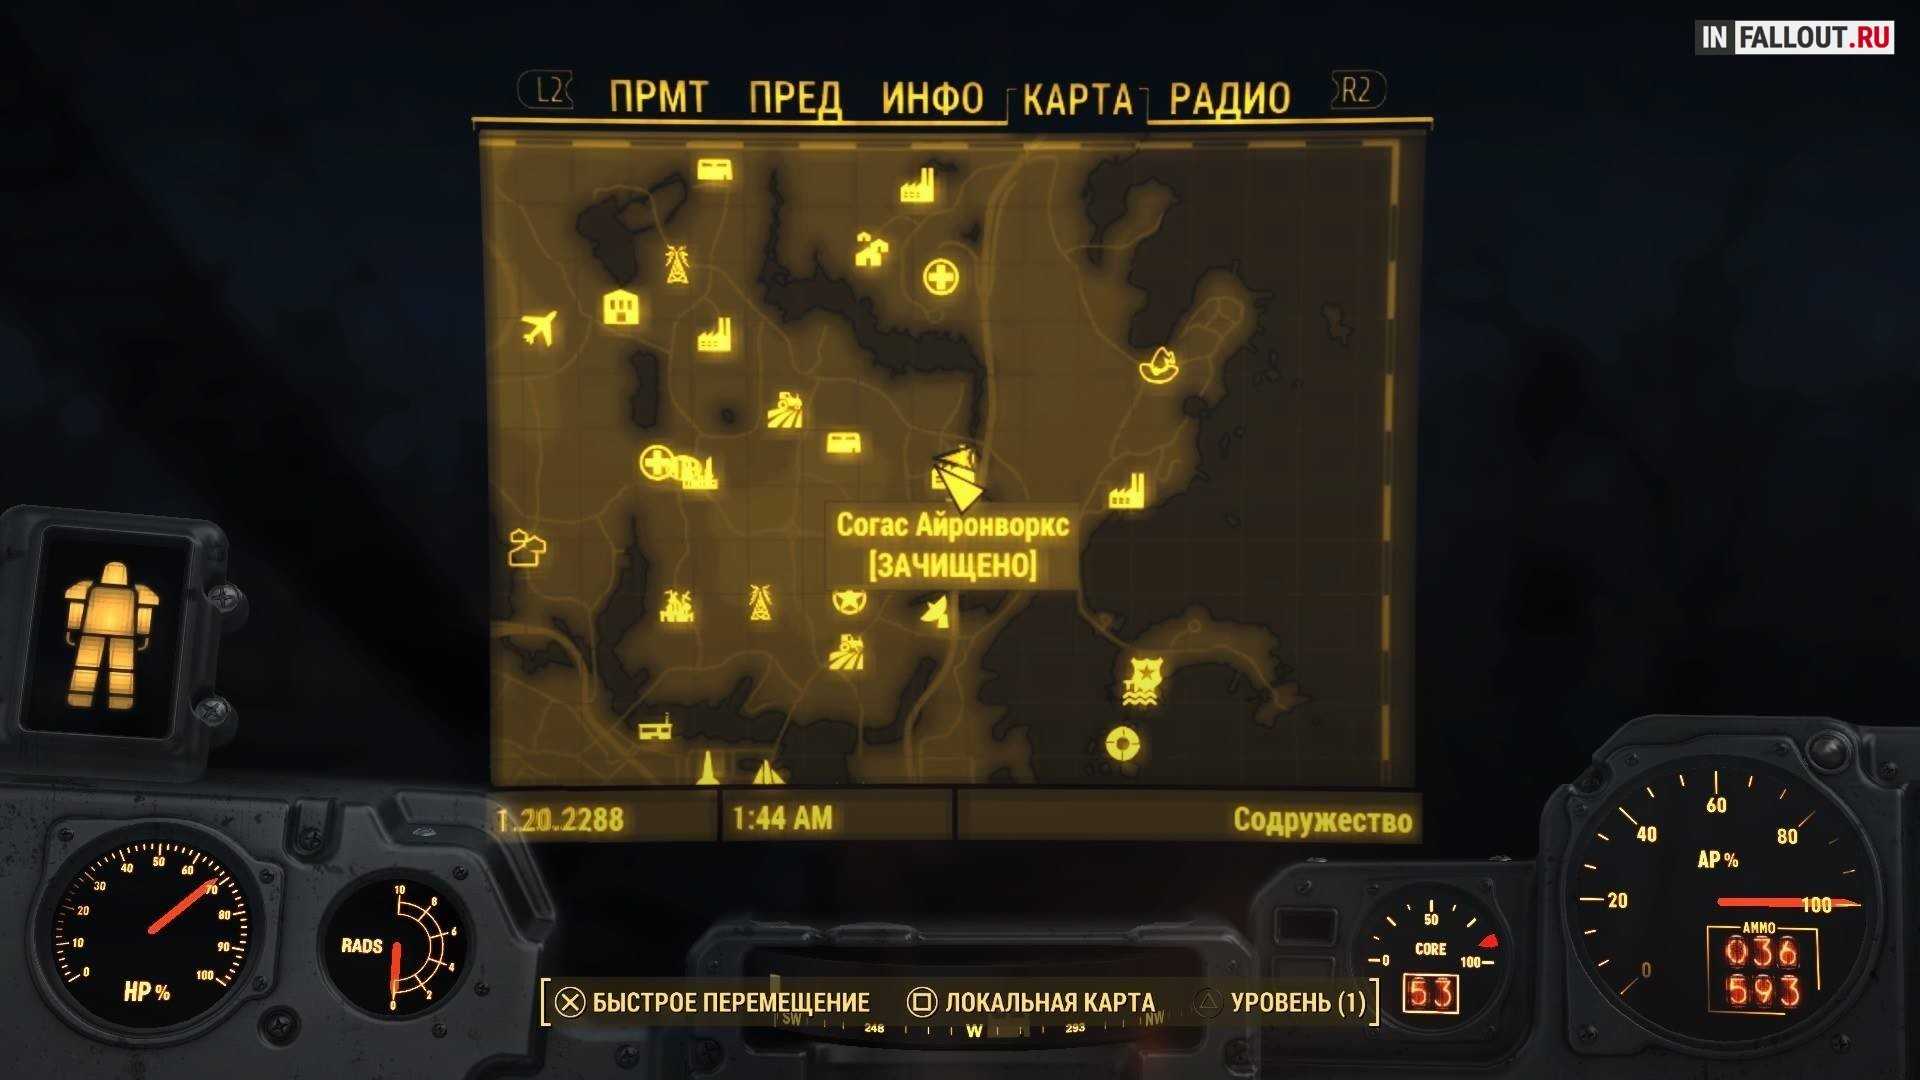 Fallout 4 пупсы на карте (102) фото